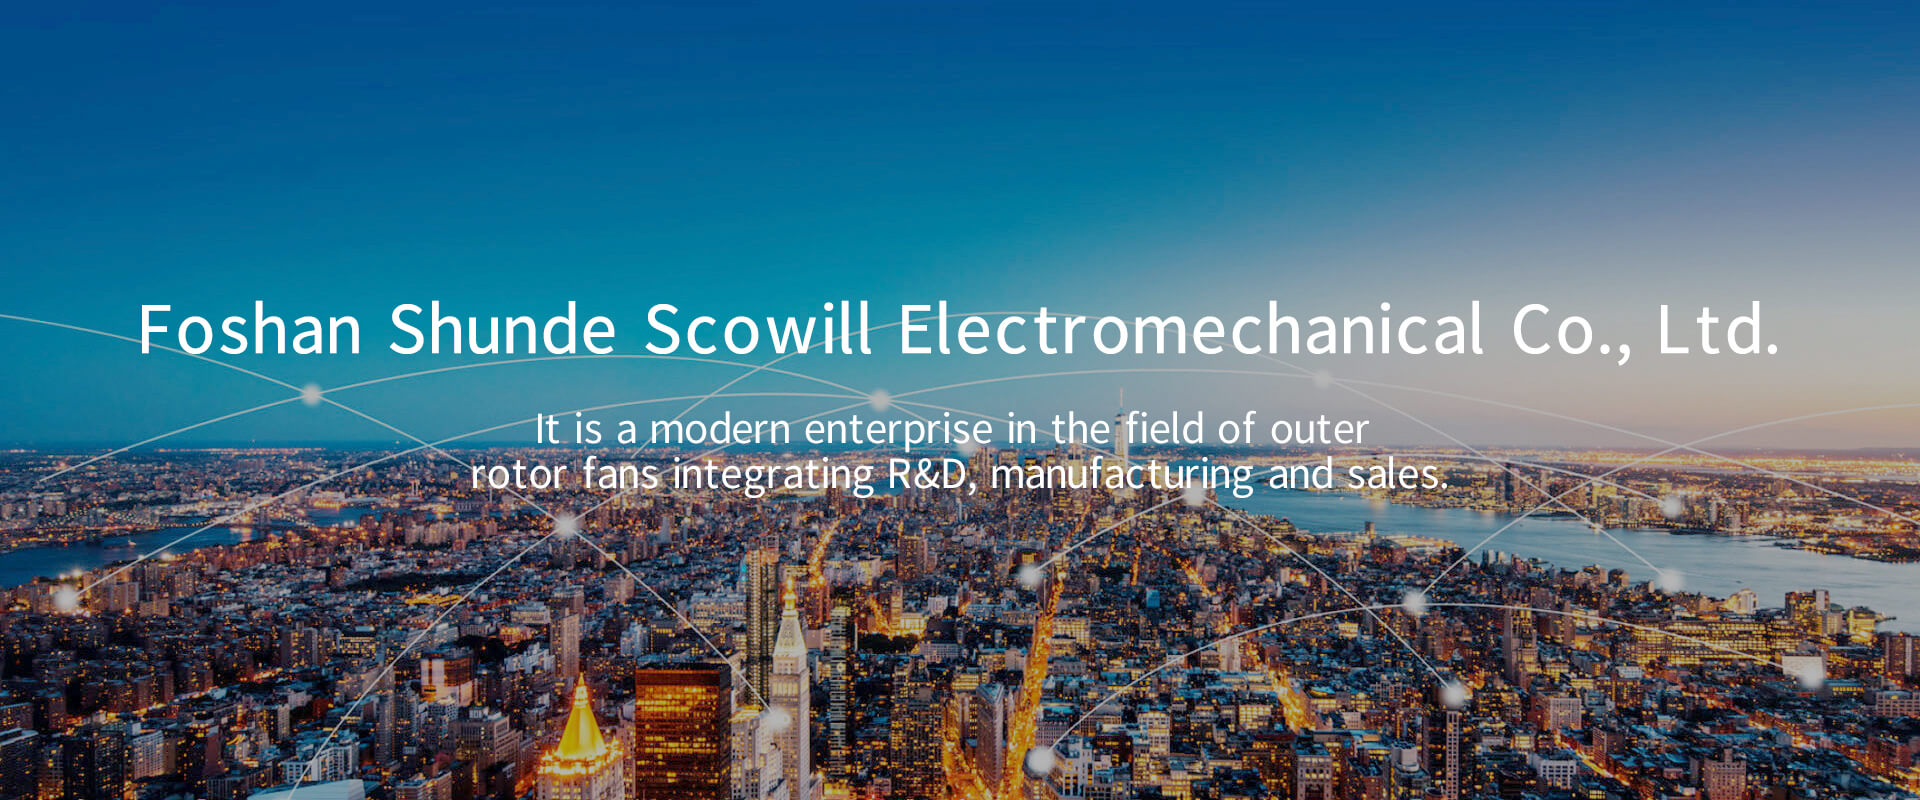 Foshan Shunde Scowill Electromechanical Co., Ltd.,Scowill,Scowill Electromechanical,Axial Fan,Centrifugal Fan,Duct Fan